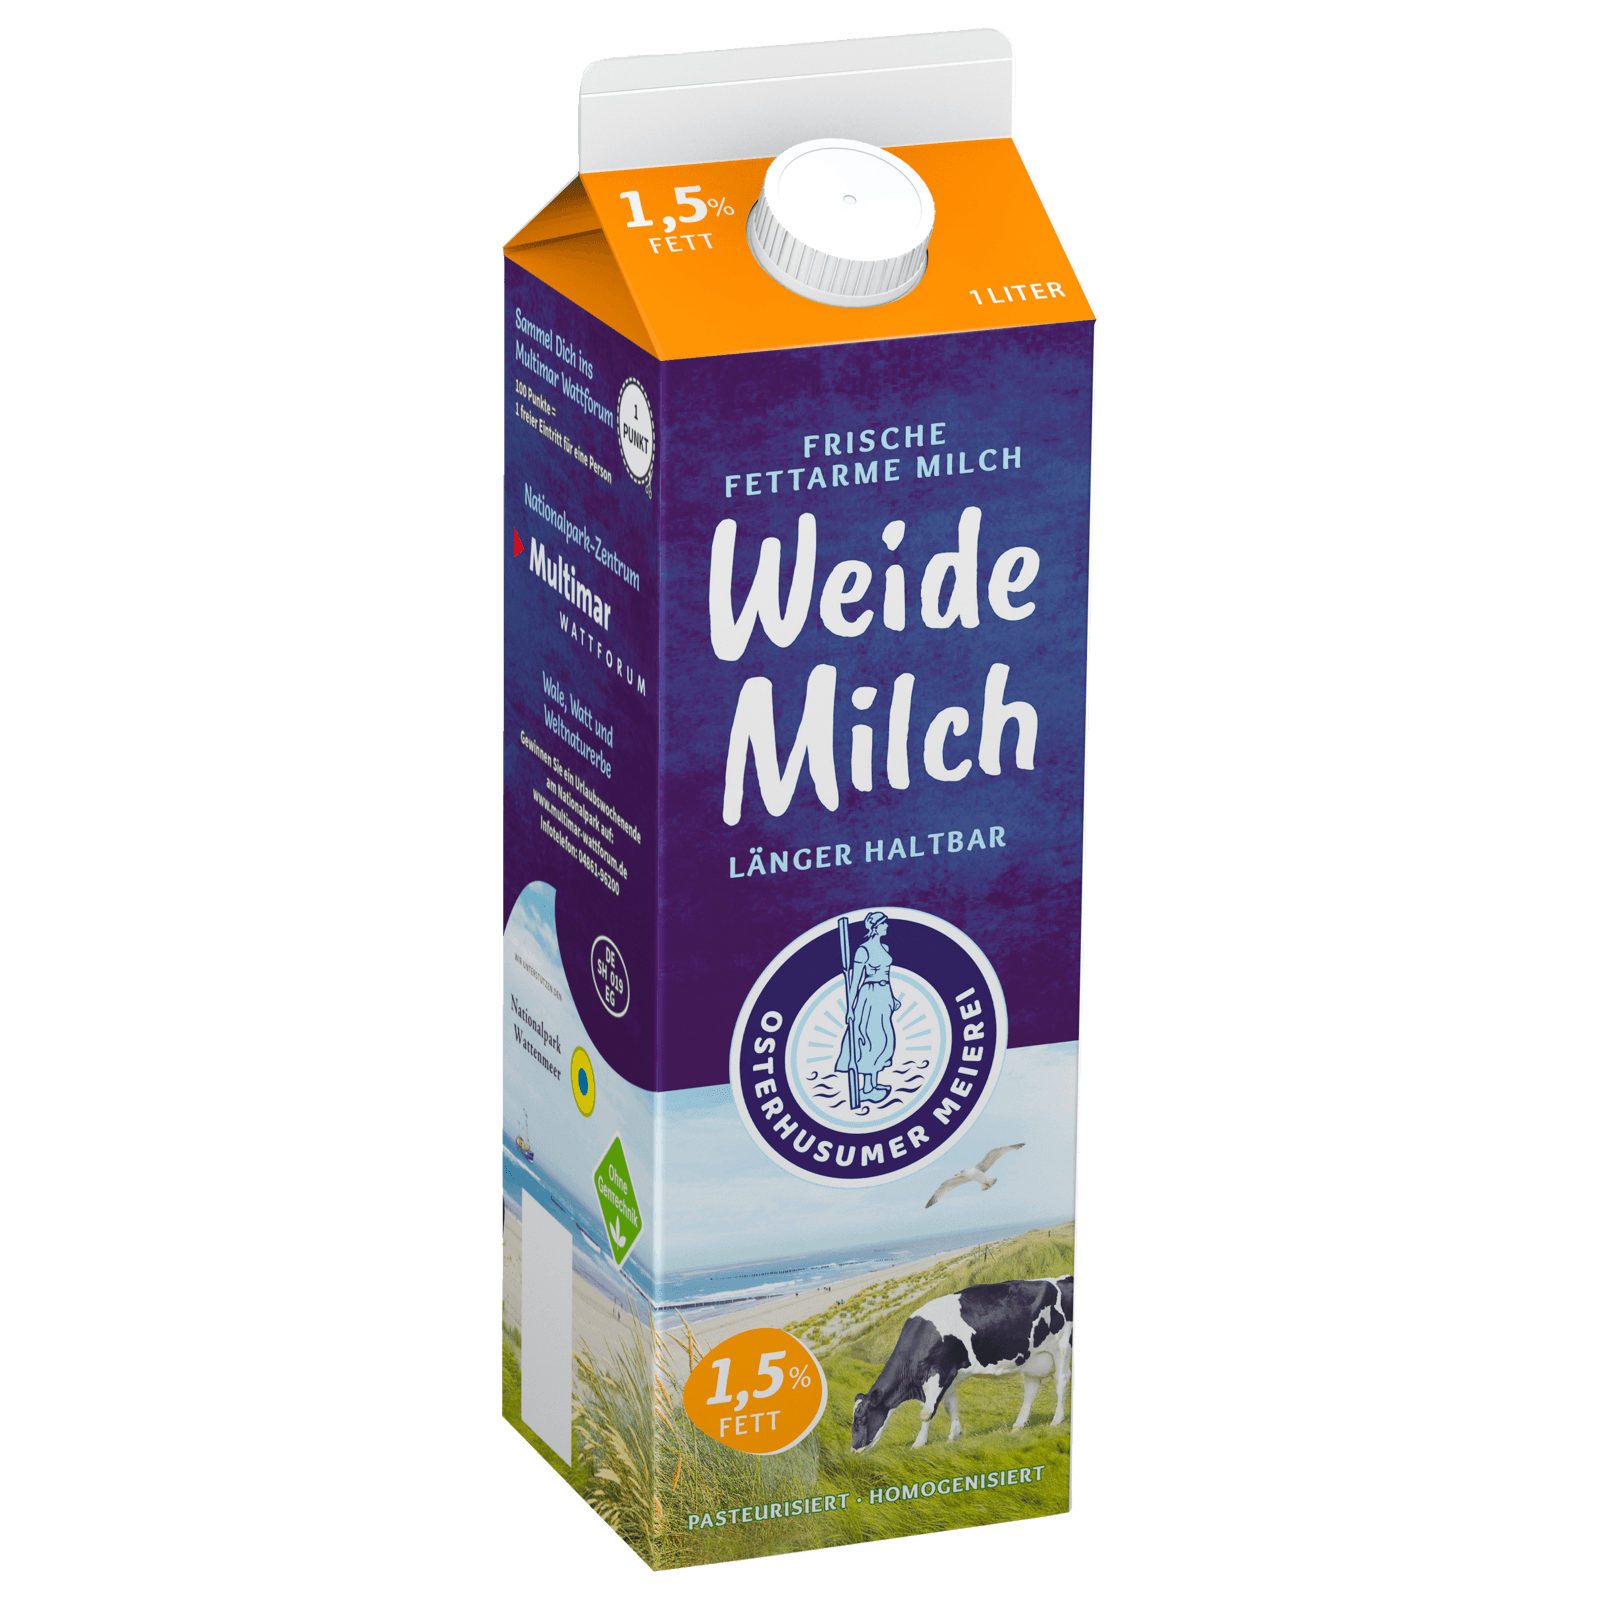 Osterhusumer Meierei Weide Milch Haltbar 1,5% 1l  für 1.49 EUR